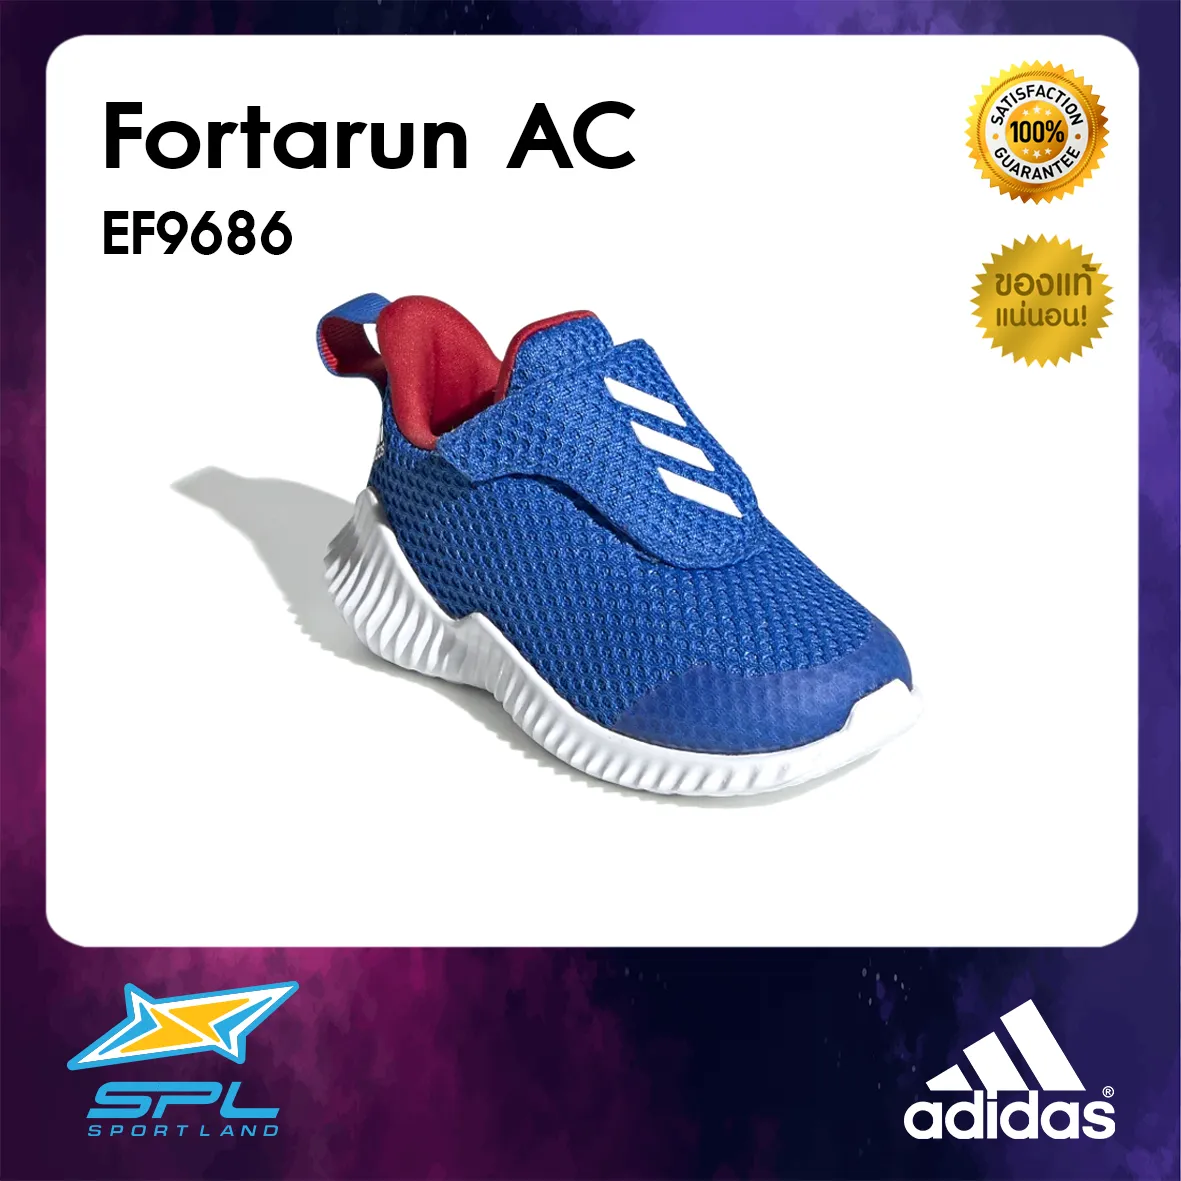 Adidas รองเท้าวิ่งเด็ก รองเท้าแฟชั่น รองเท้ากีฬา รองเท้าผ้าใบ รองเท้าเด็ก อาดิดาส Junior Running Infants Shoe Fortarun AC EF9686 (1200)